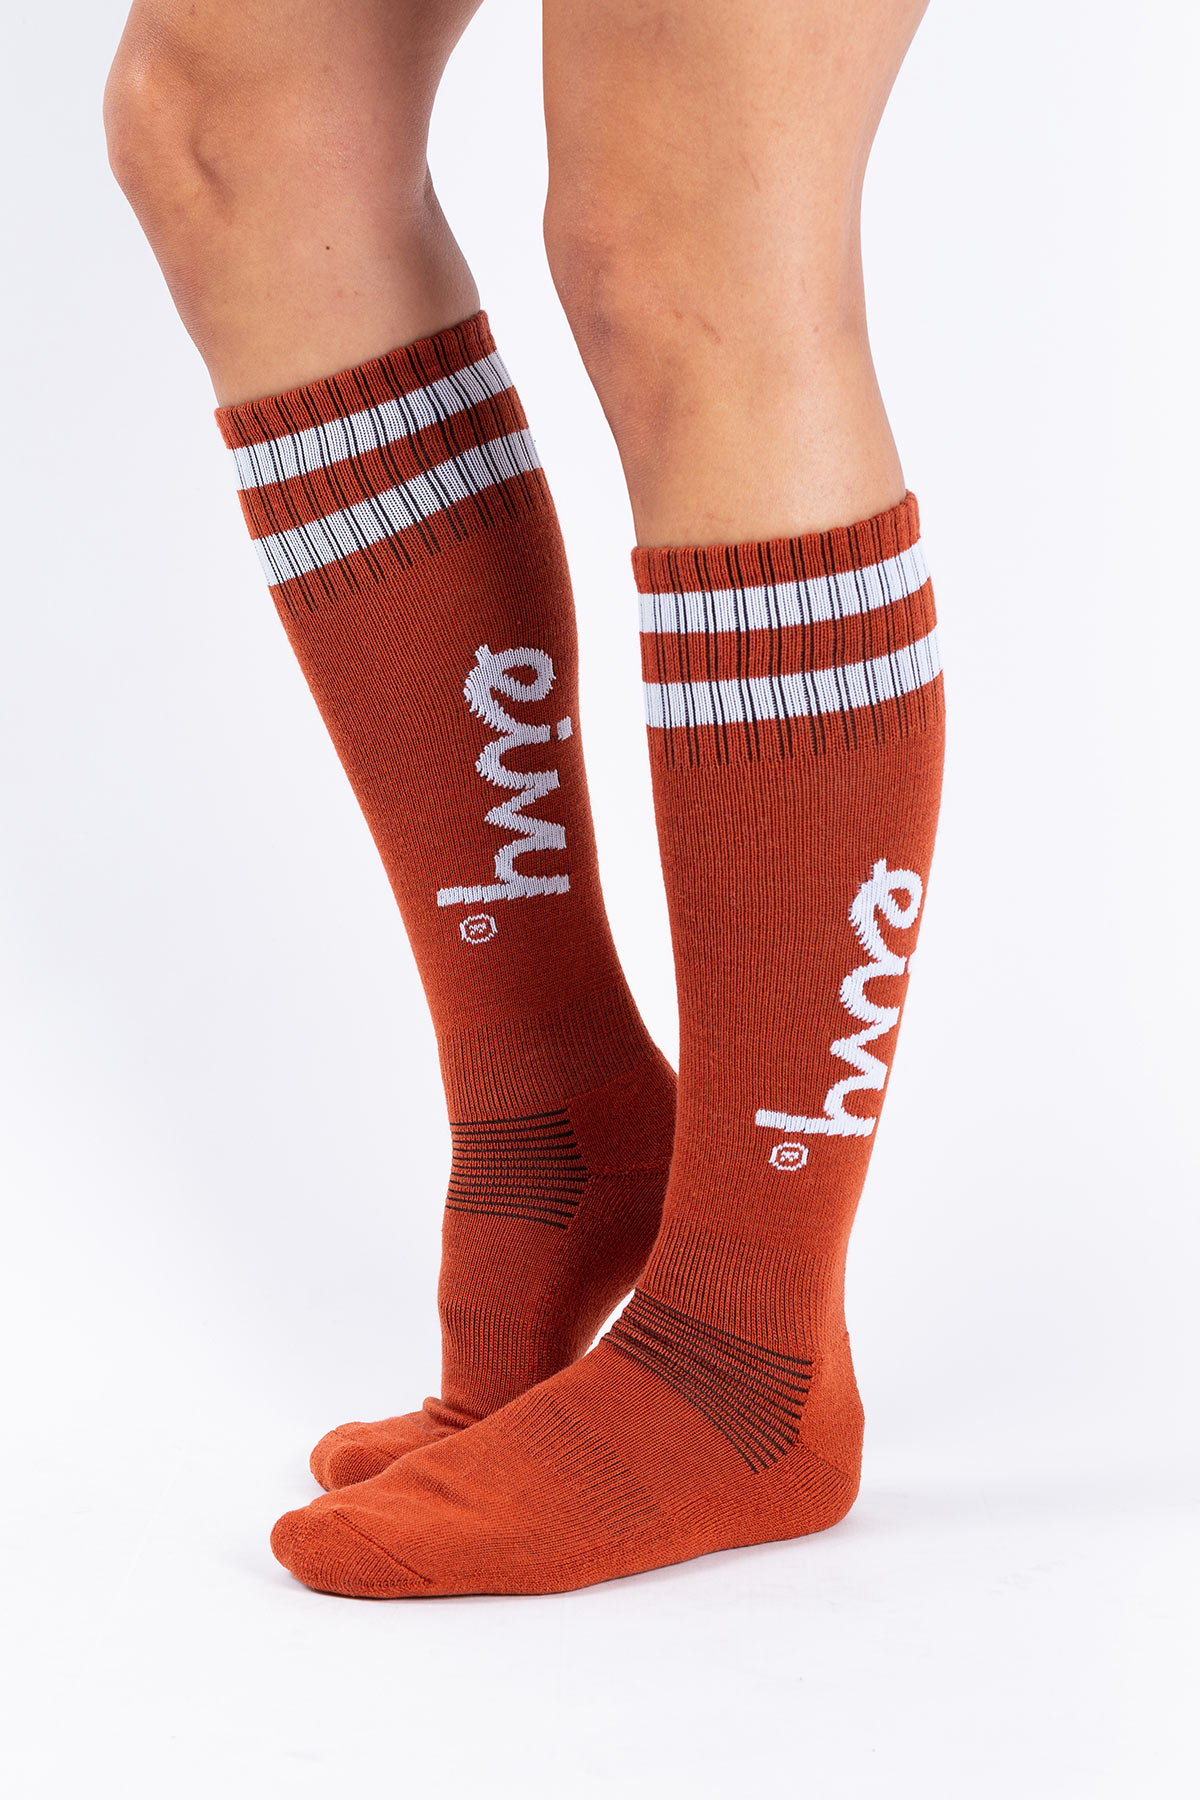 Socks | Cheerleader Wool - Rustic